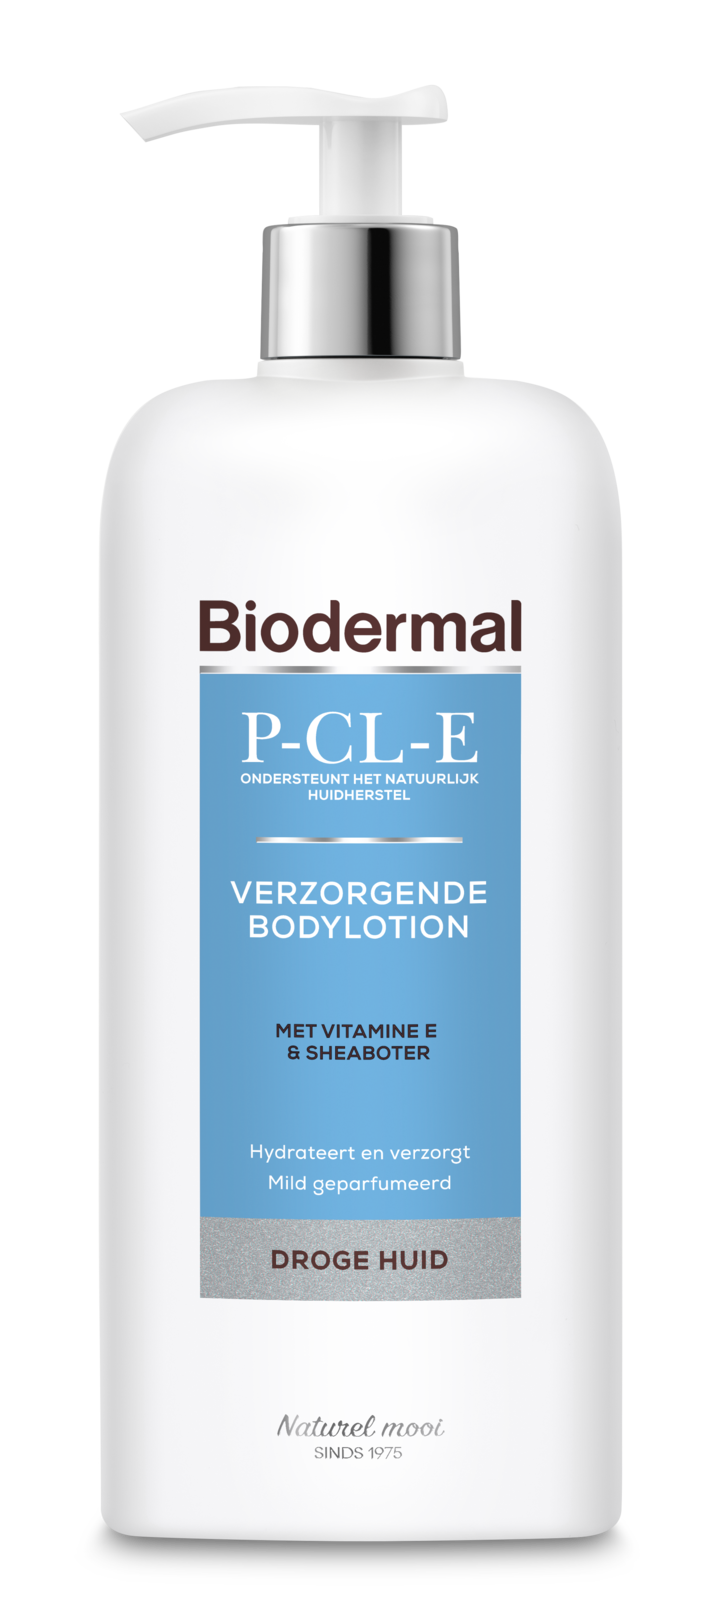 Biodermal P-CL-E Verzorgende Bodylotion voor de droge huid - Bodylotion met vitamine E en natuurlijke sheaboter - 400ml